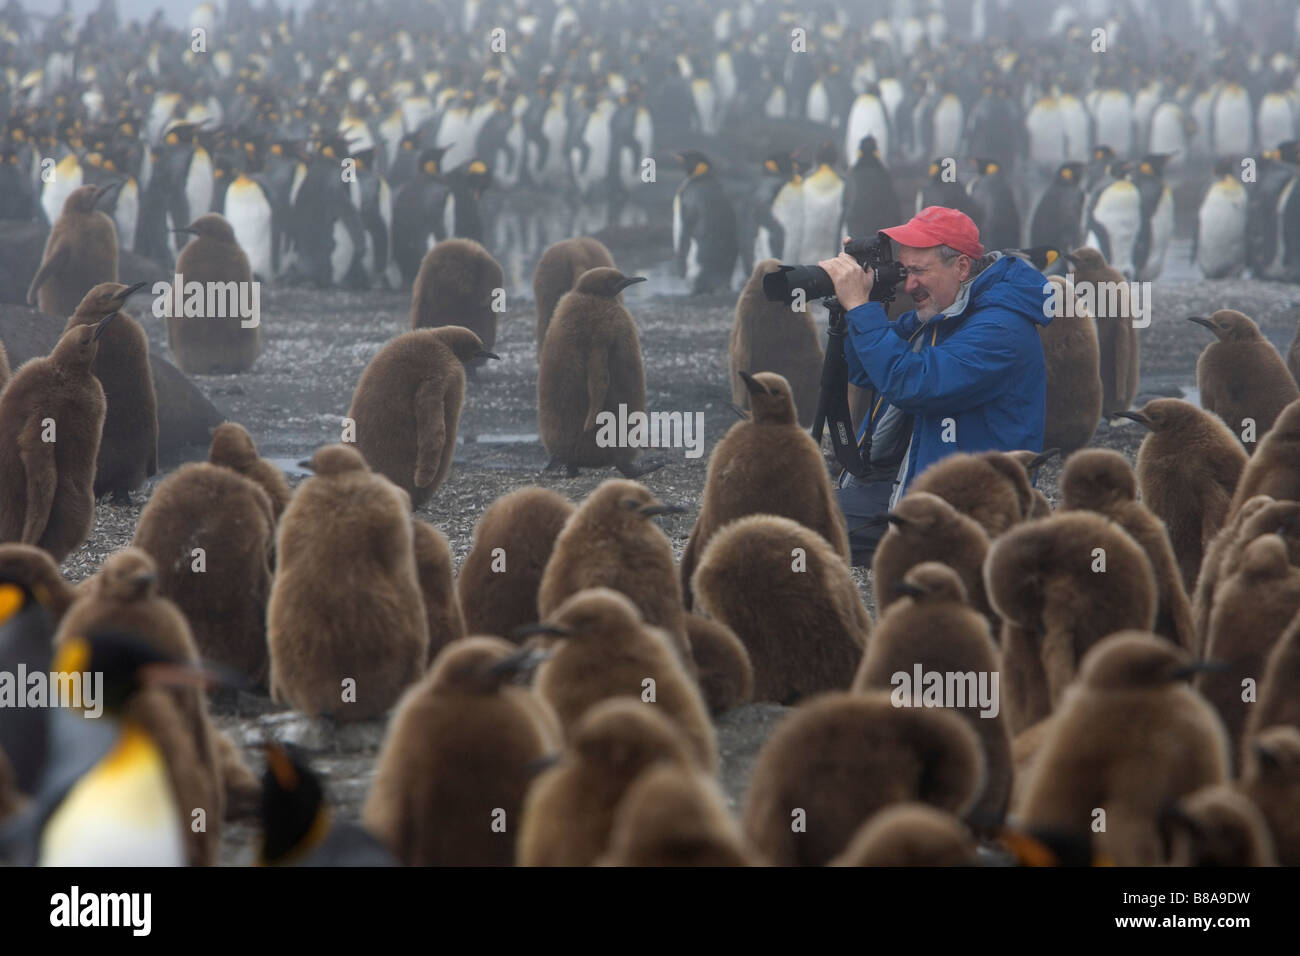 Tourist photographing King Penguin chicks l'étoupe (garçons), Gold Harbour, South Georgia Island Banque D'Images